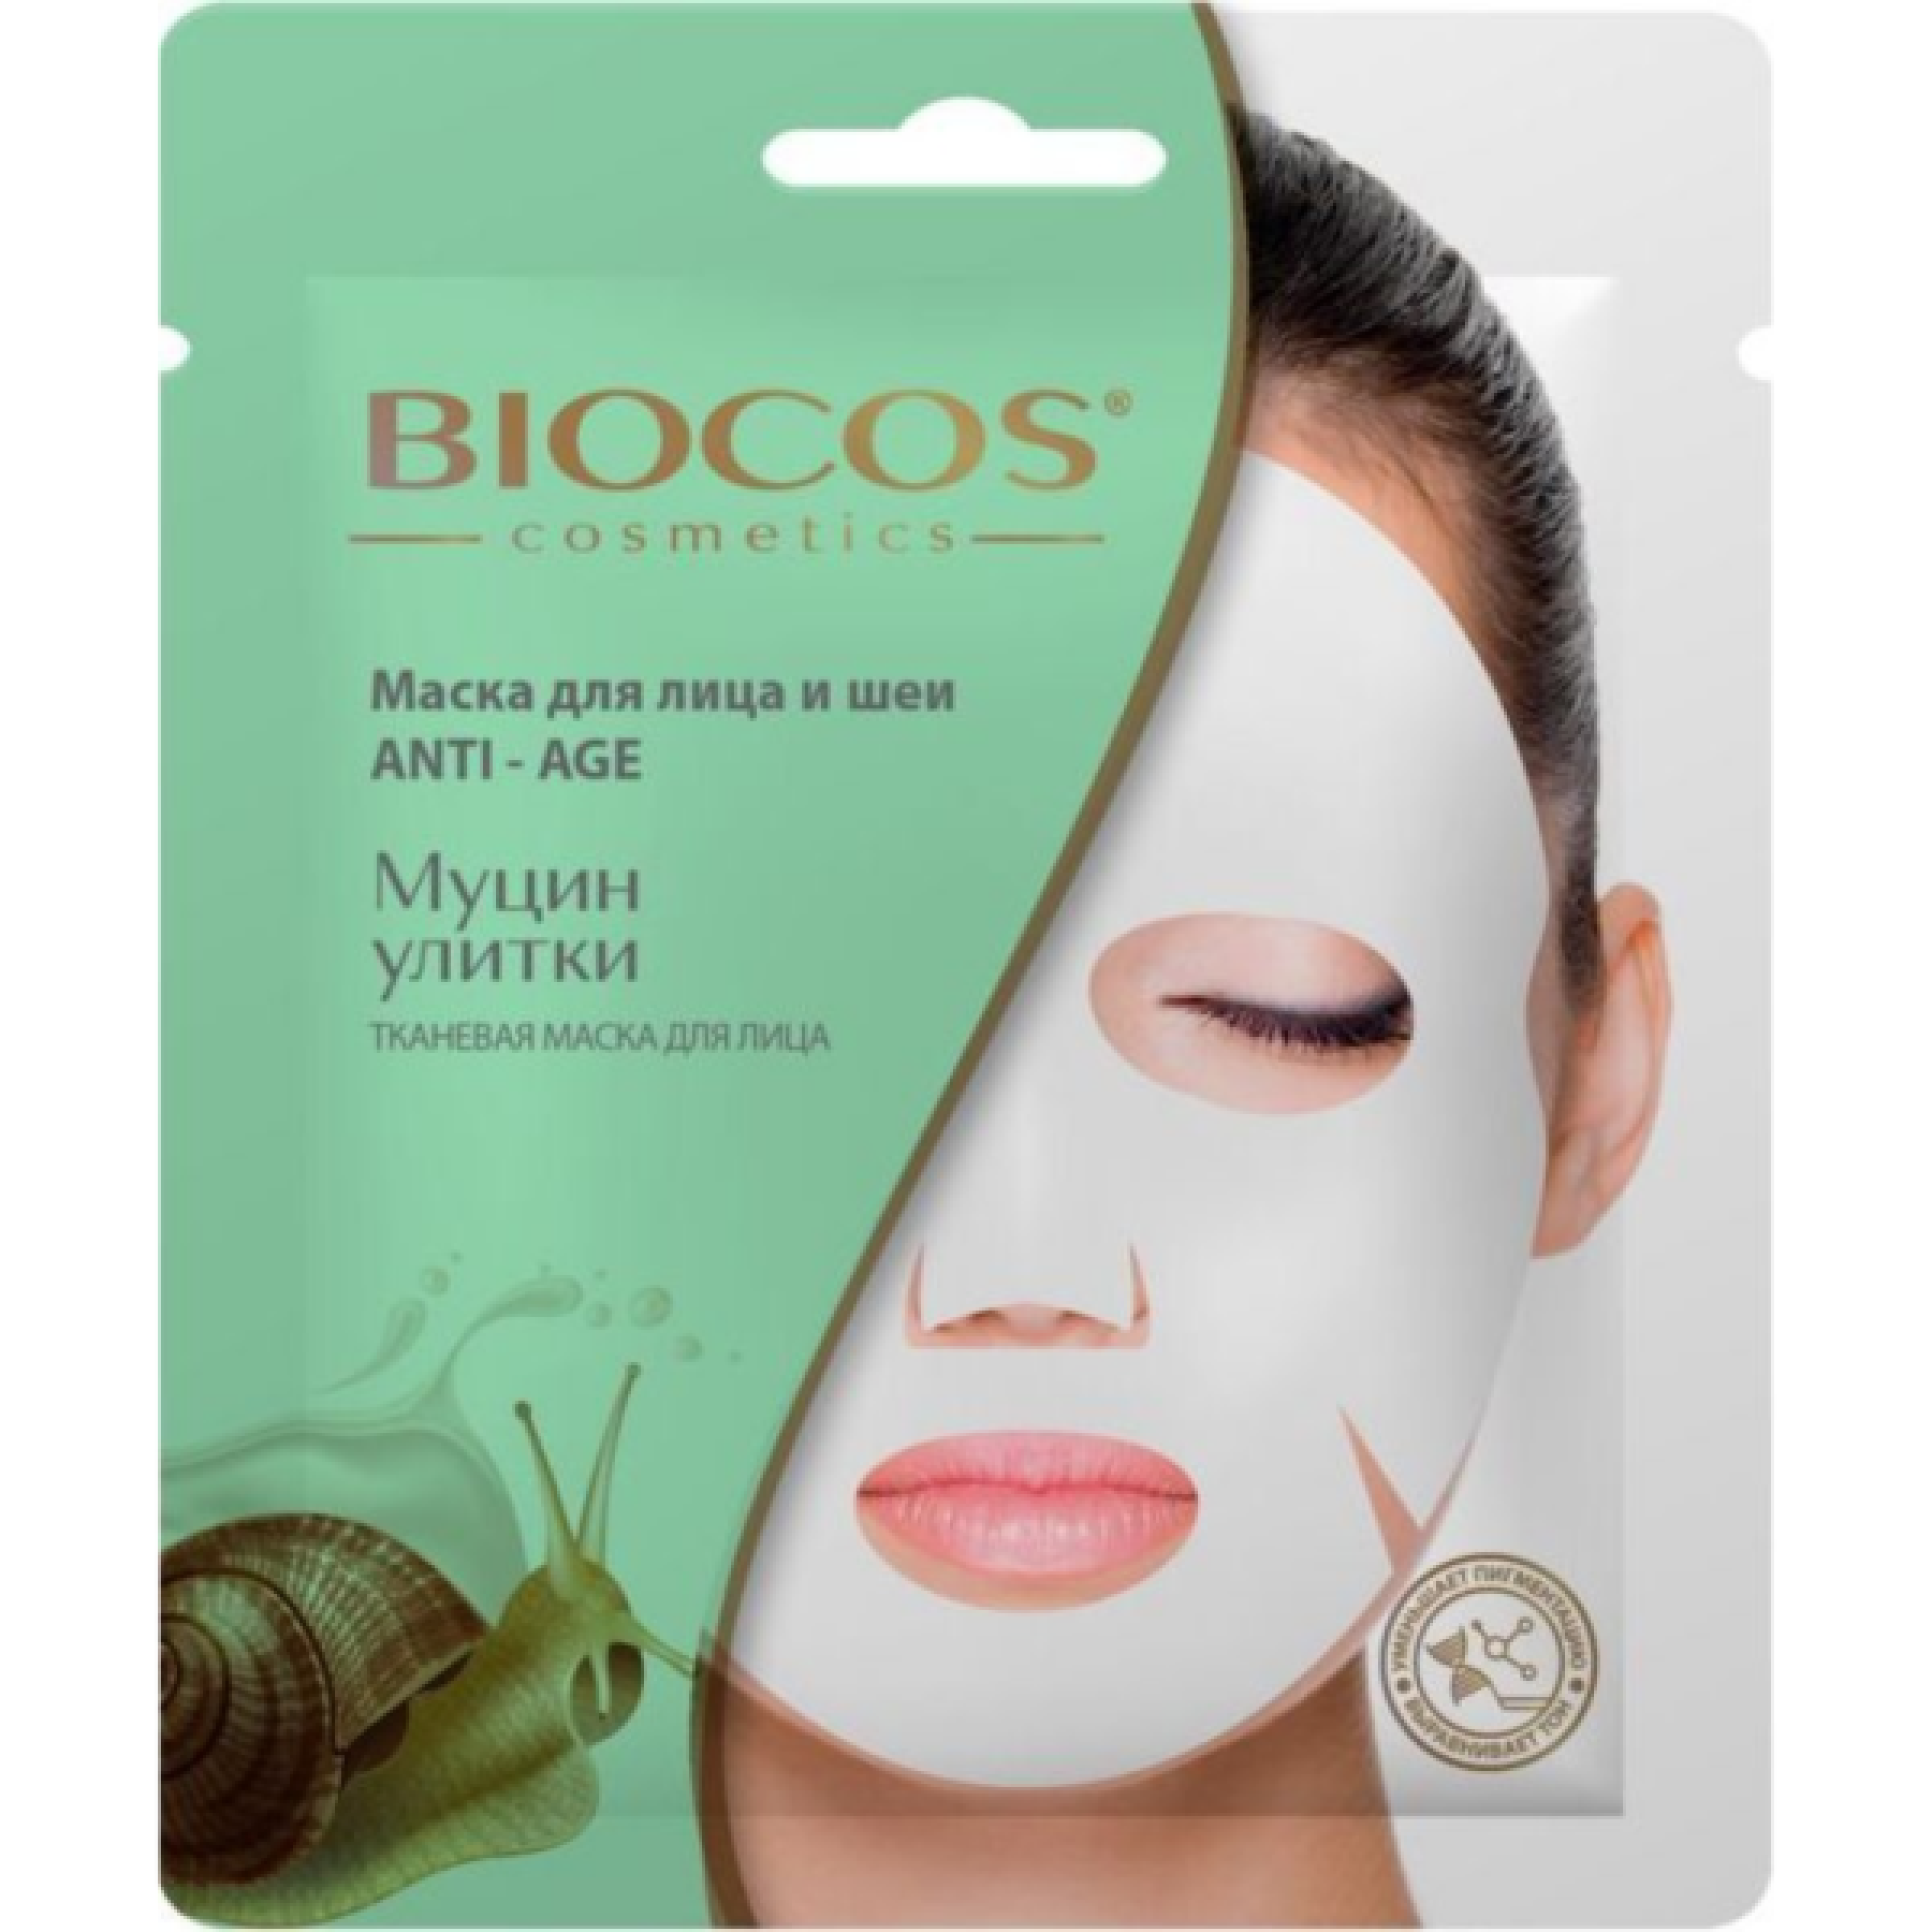 Тканевая маска для лица и шеи BioCos Anti-age с муцином улитки, 1 шт